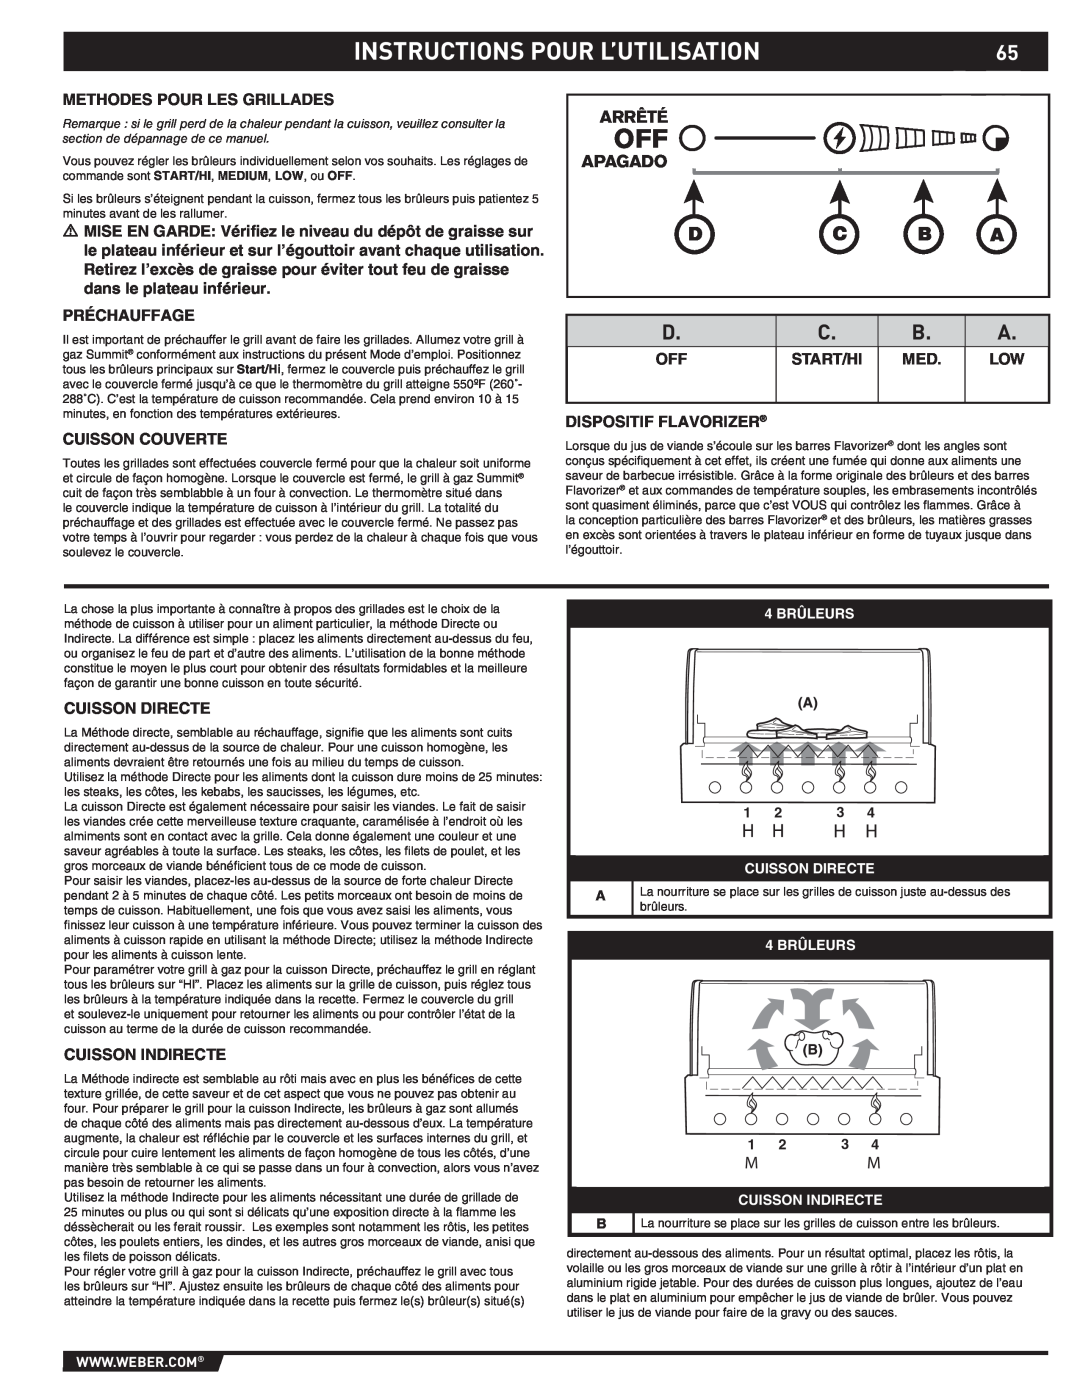 Weber S-470TM manual Instructions Pour L’Utilisation, D C B A, Arrêté, Apagado 